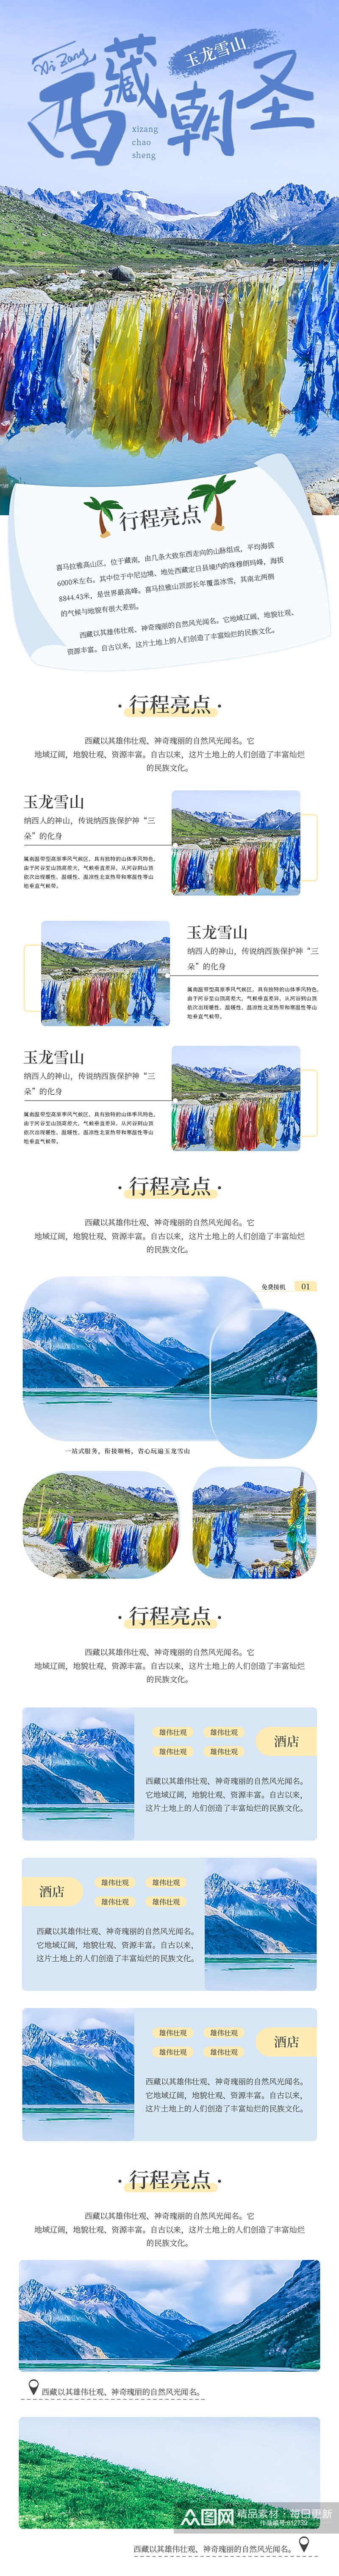 简约西藏游玩民族西北旅游详情页素材